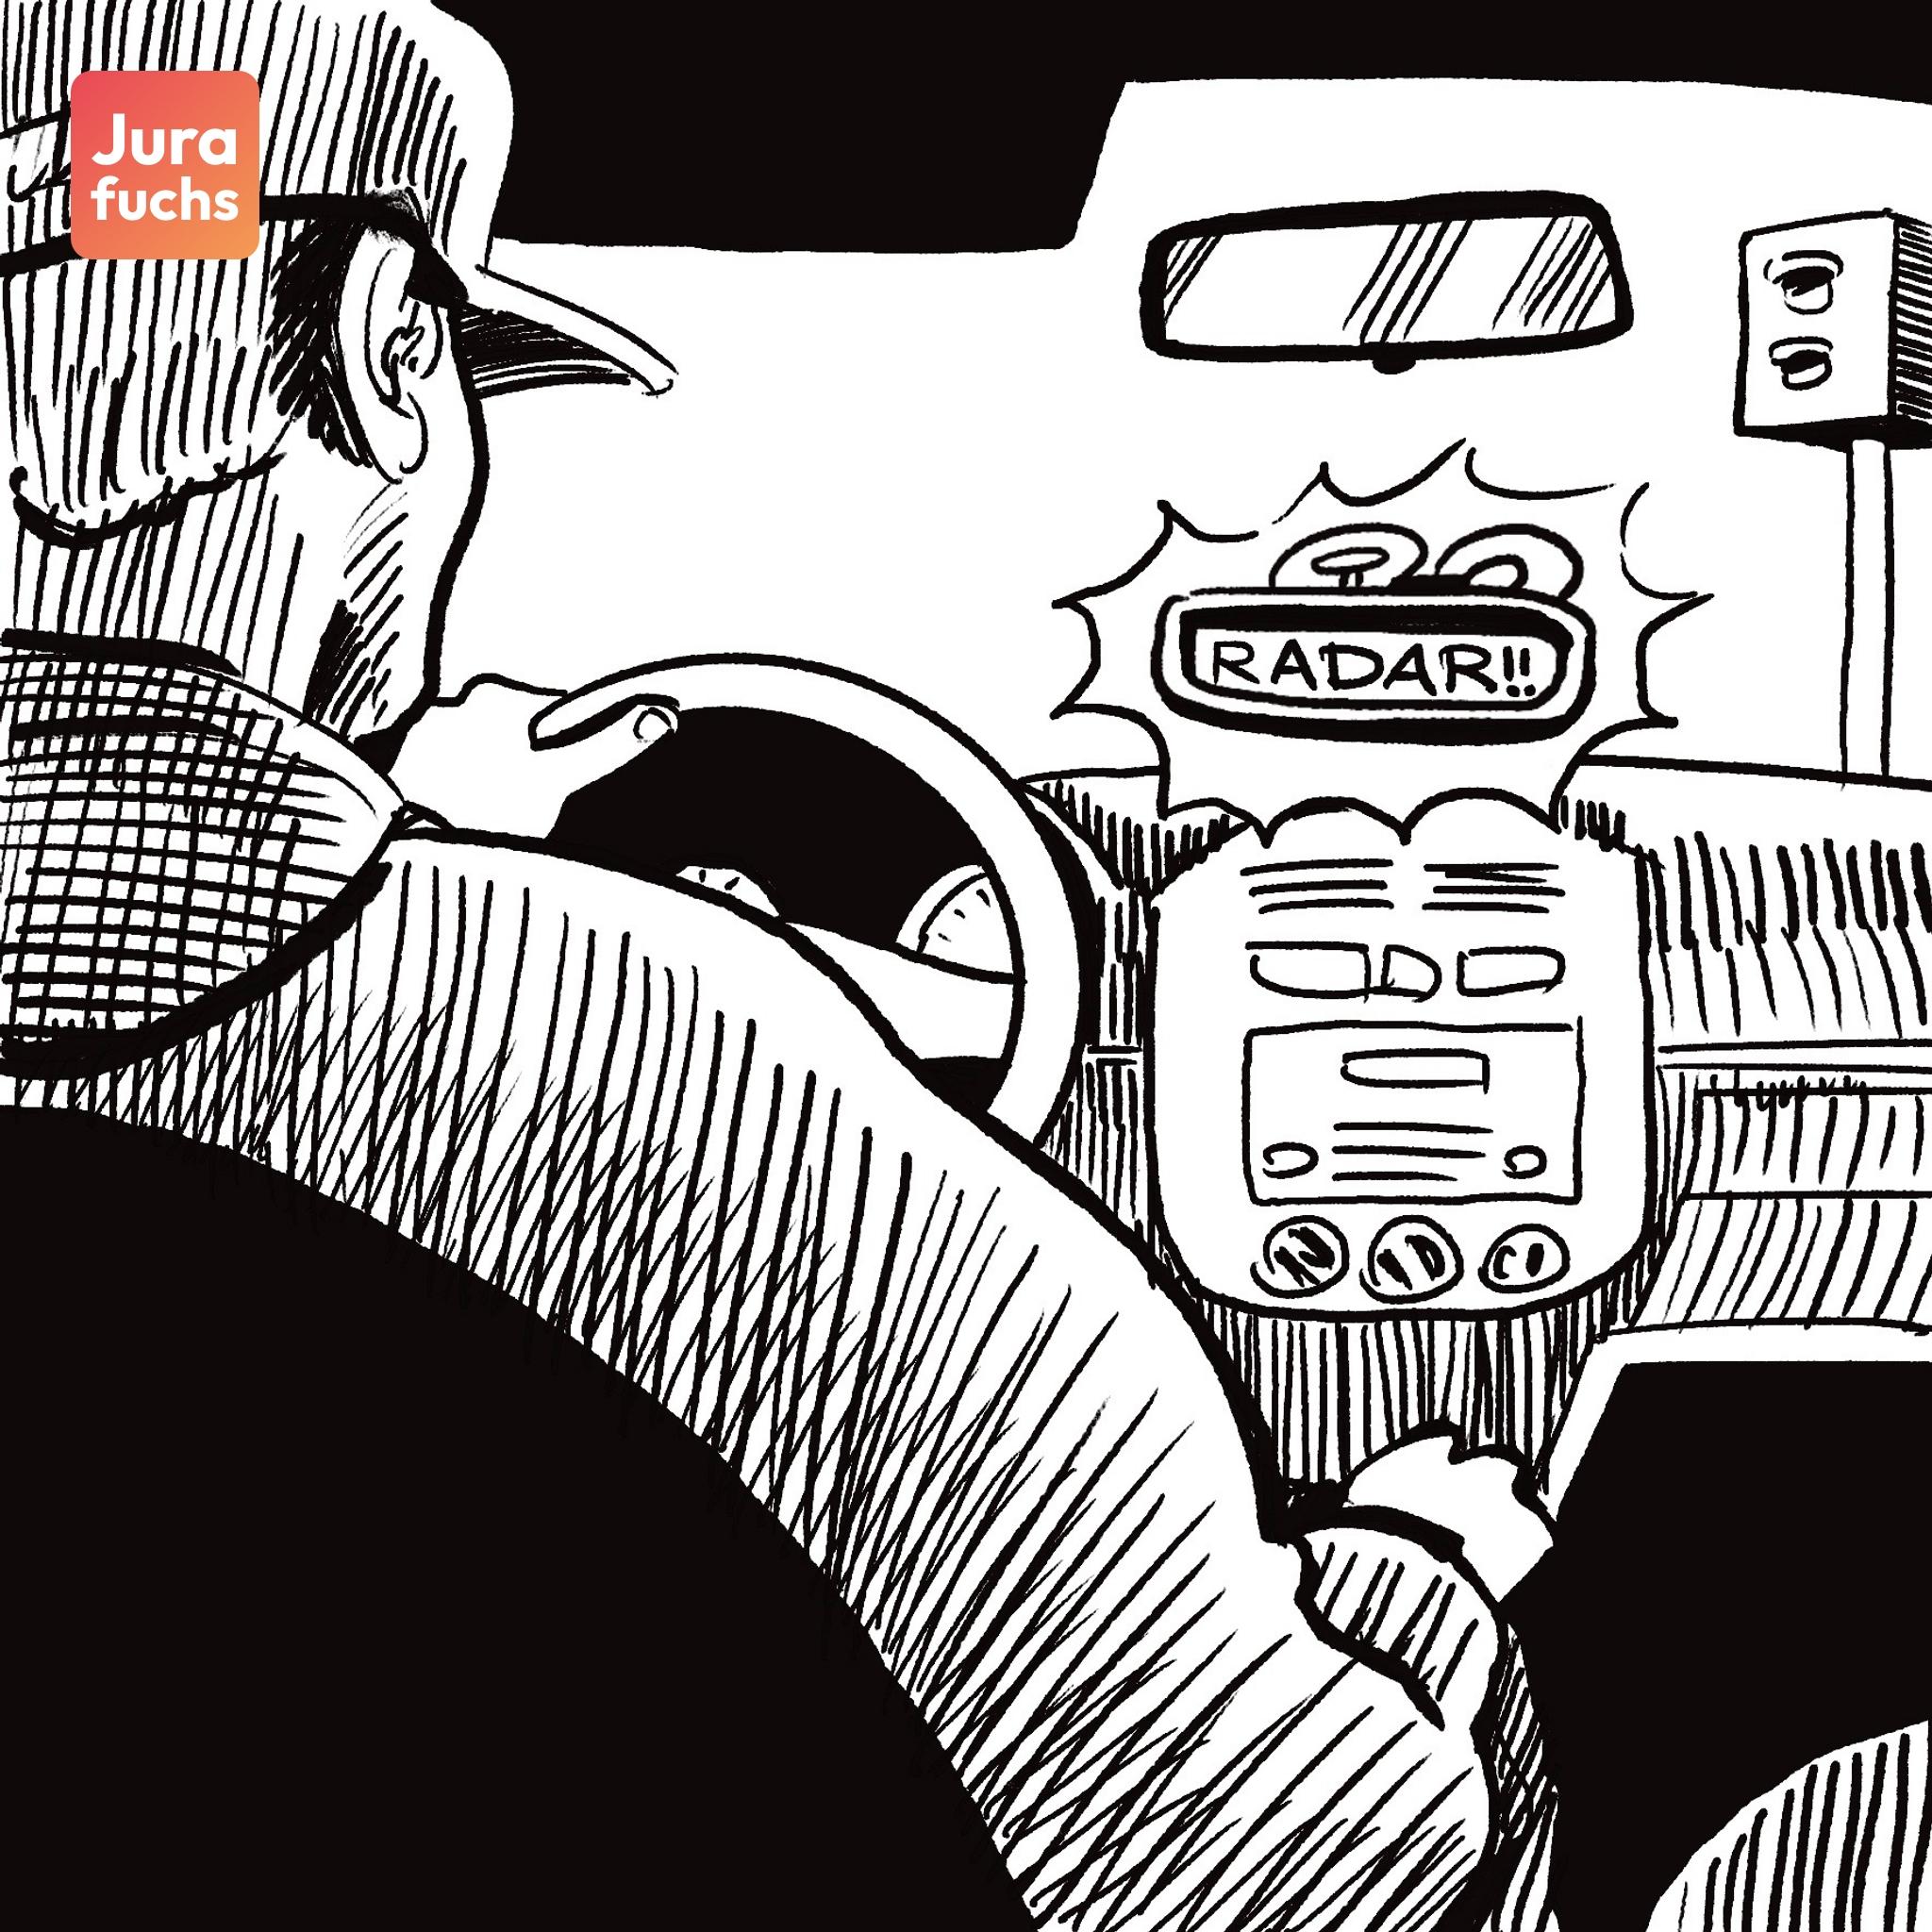 Jurafuchs-Illustration zum Fall zum Radarwarngerät als Fallgruppe: Ein Mann fährt ein Auto, in dem ein Radarwarngerät angebracht ist.